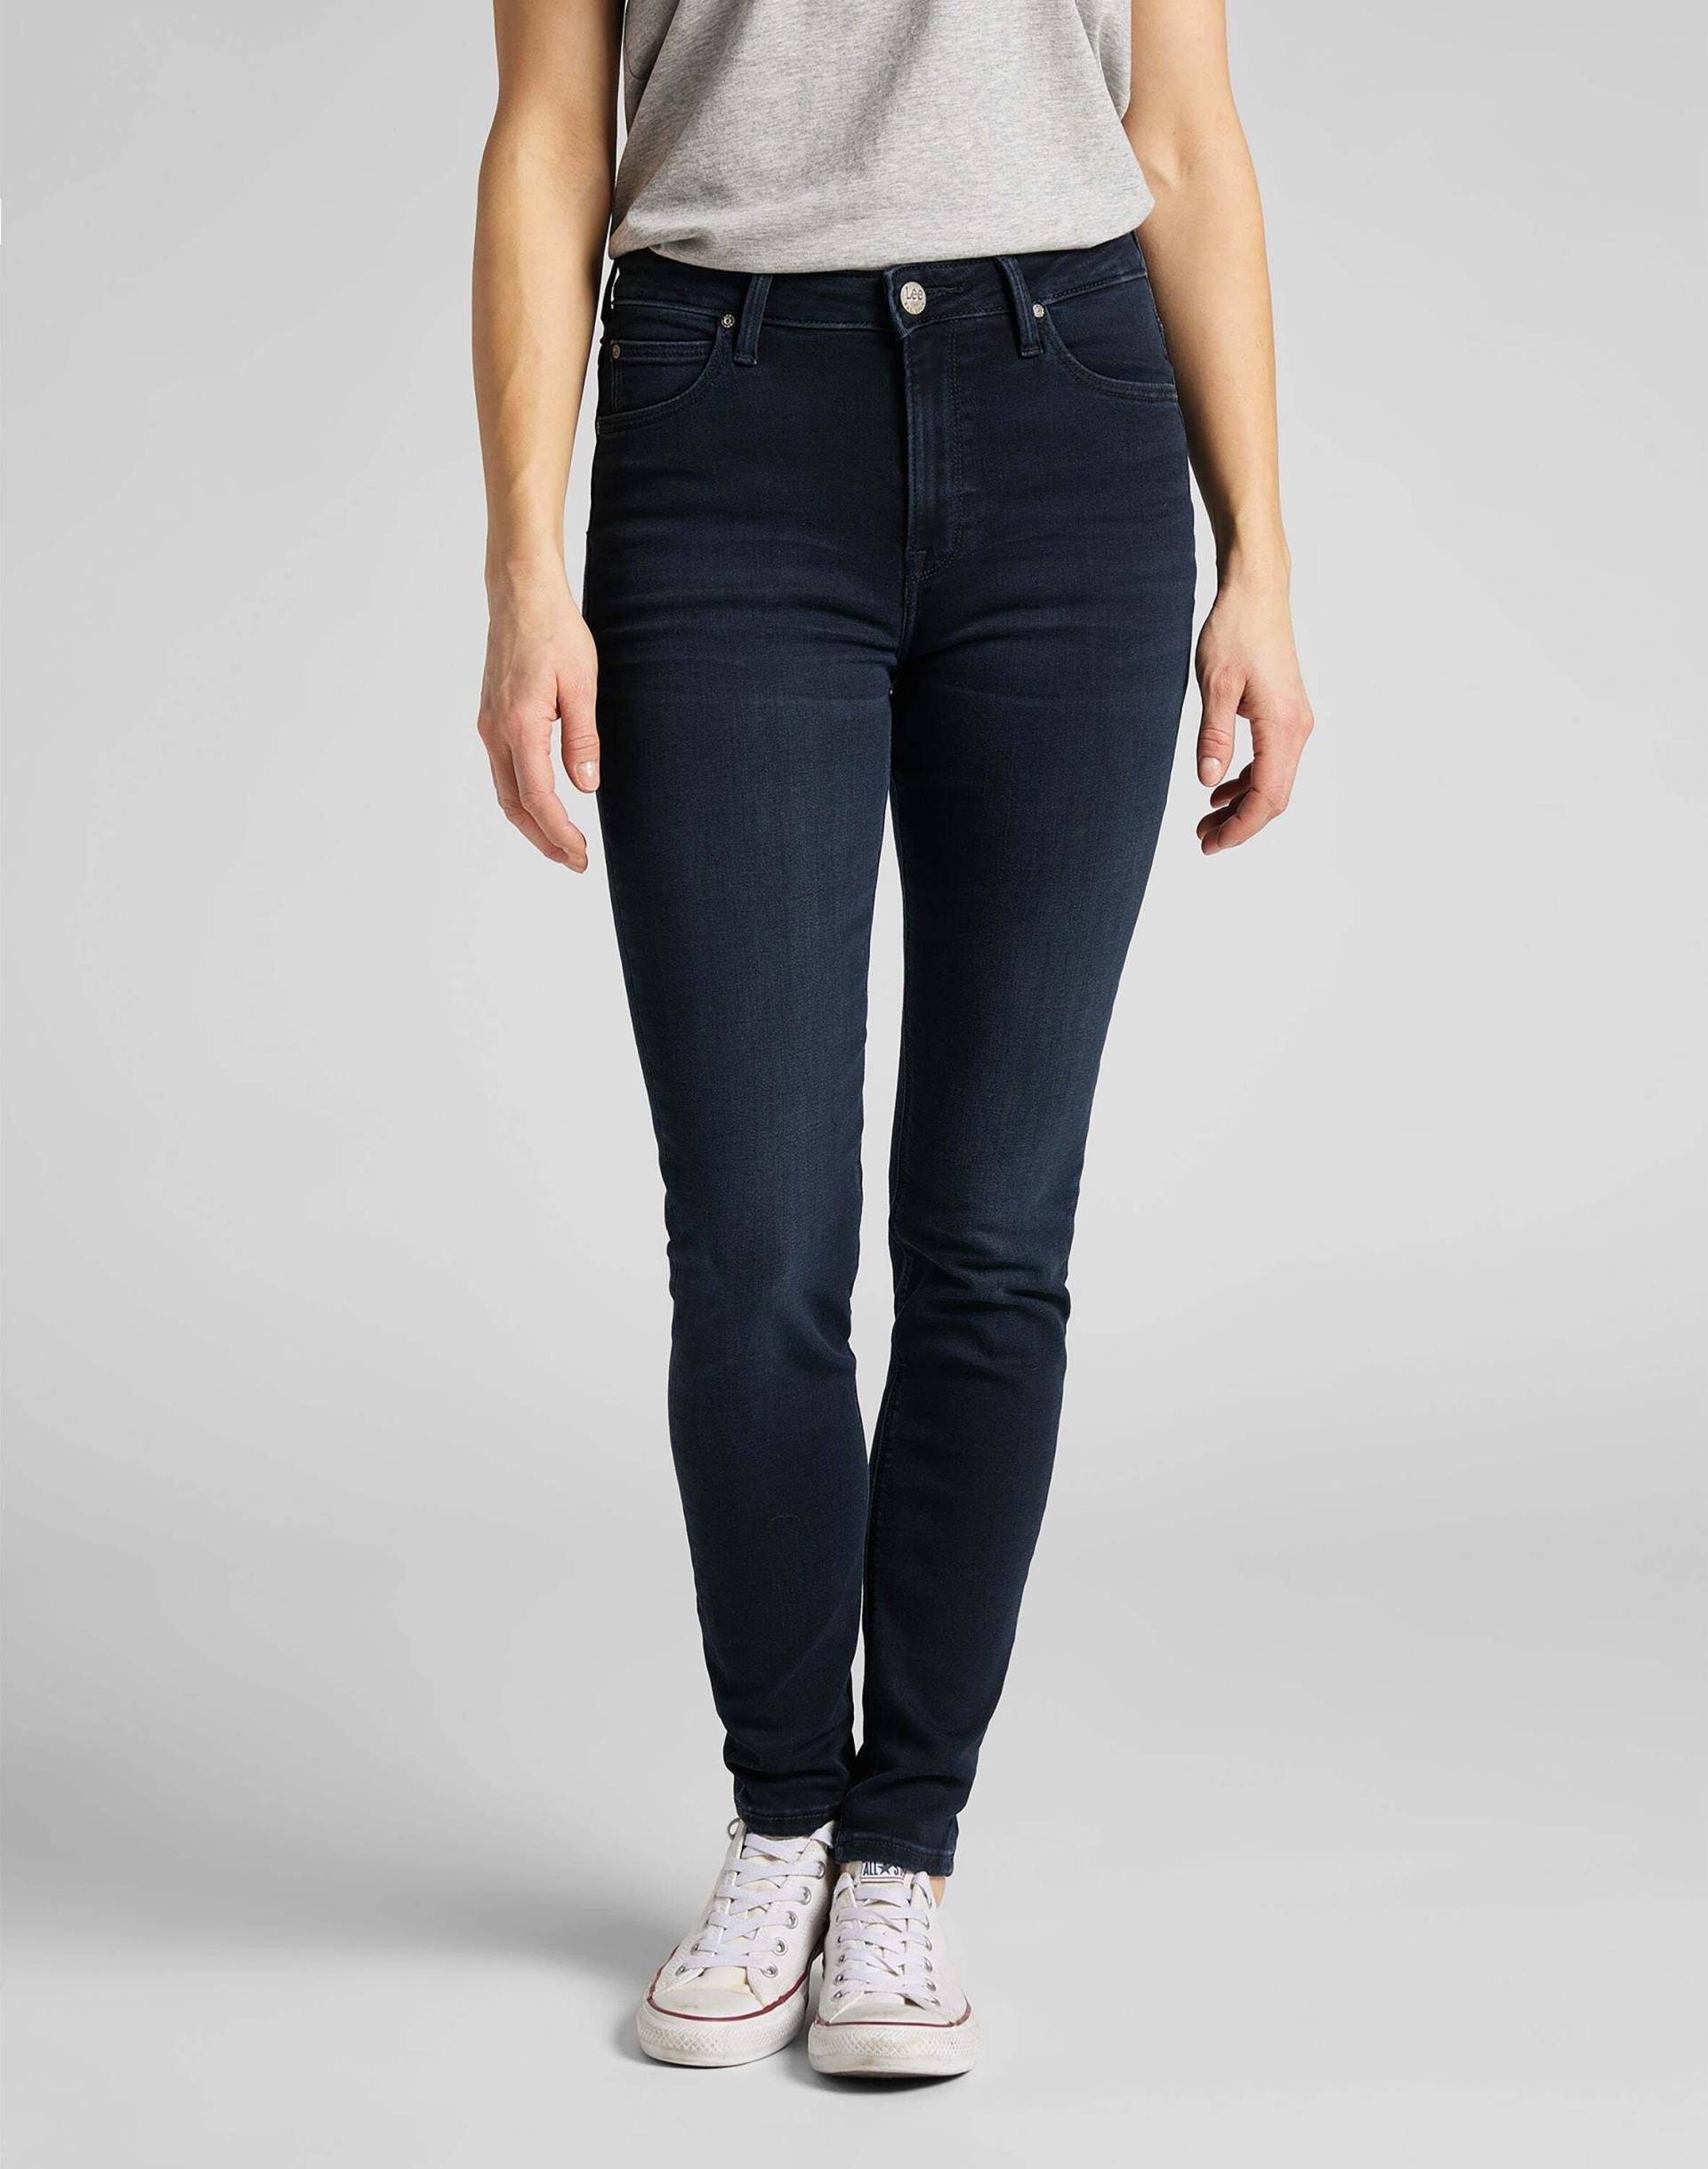 Jeans Skinny Fit Scarlett High Damen Marine L31/W26 von Lee